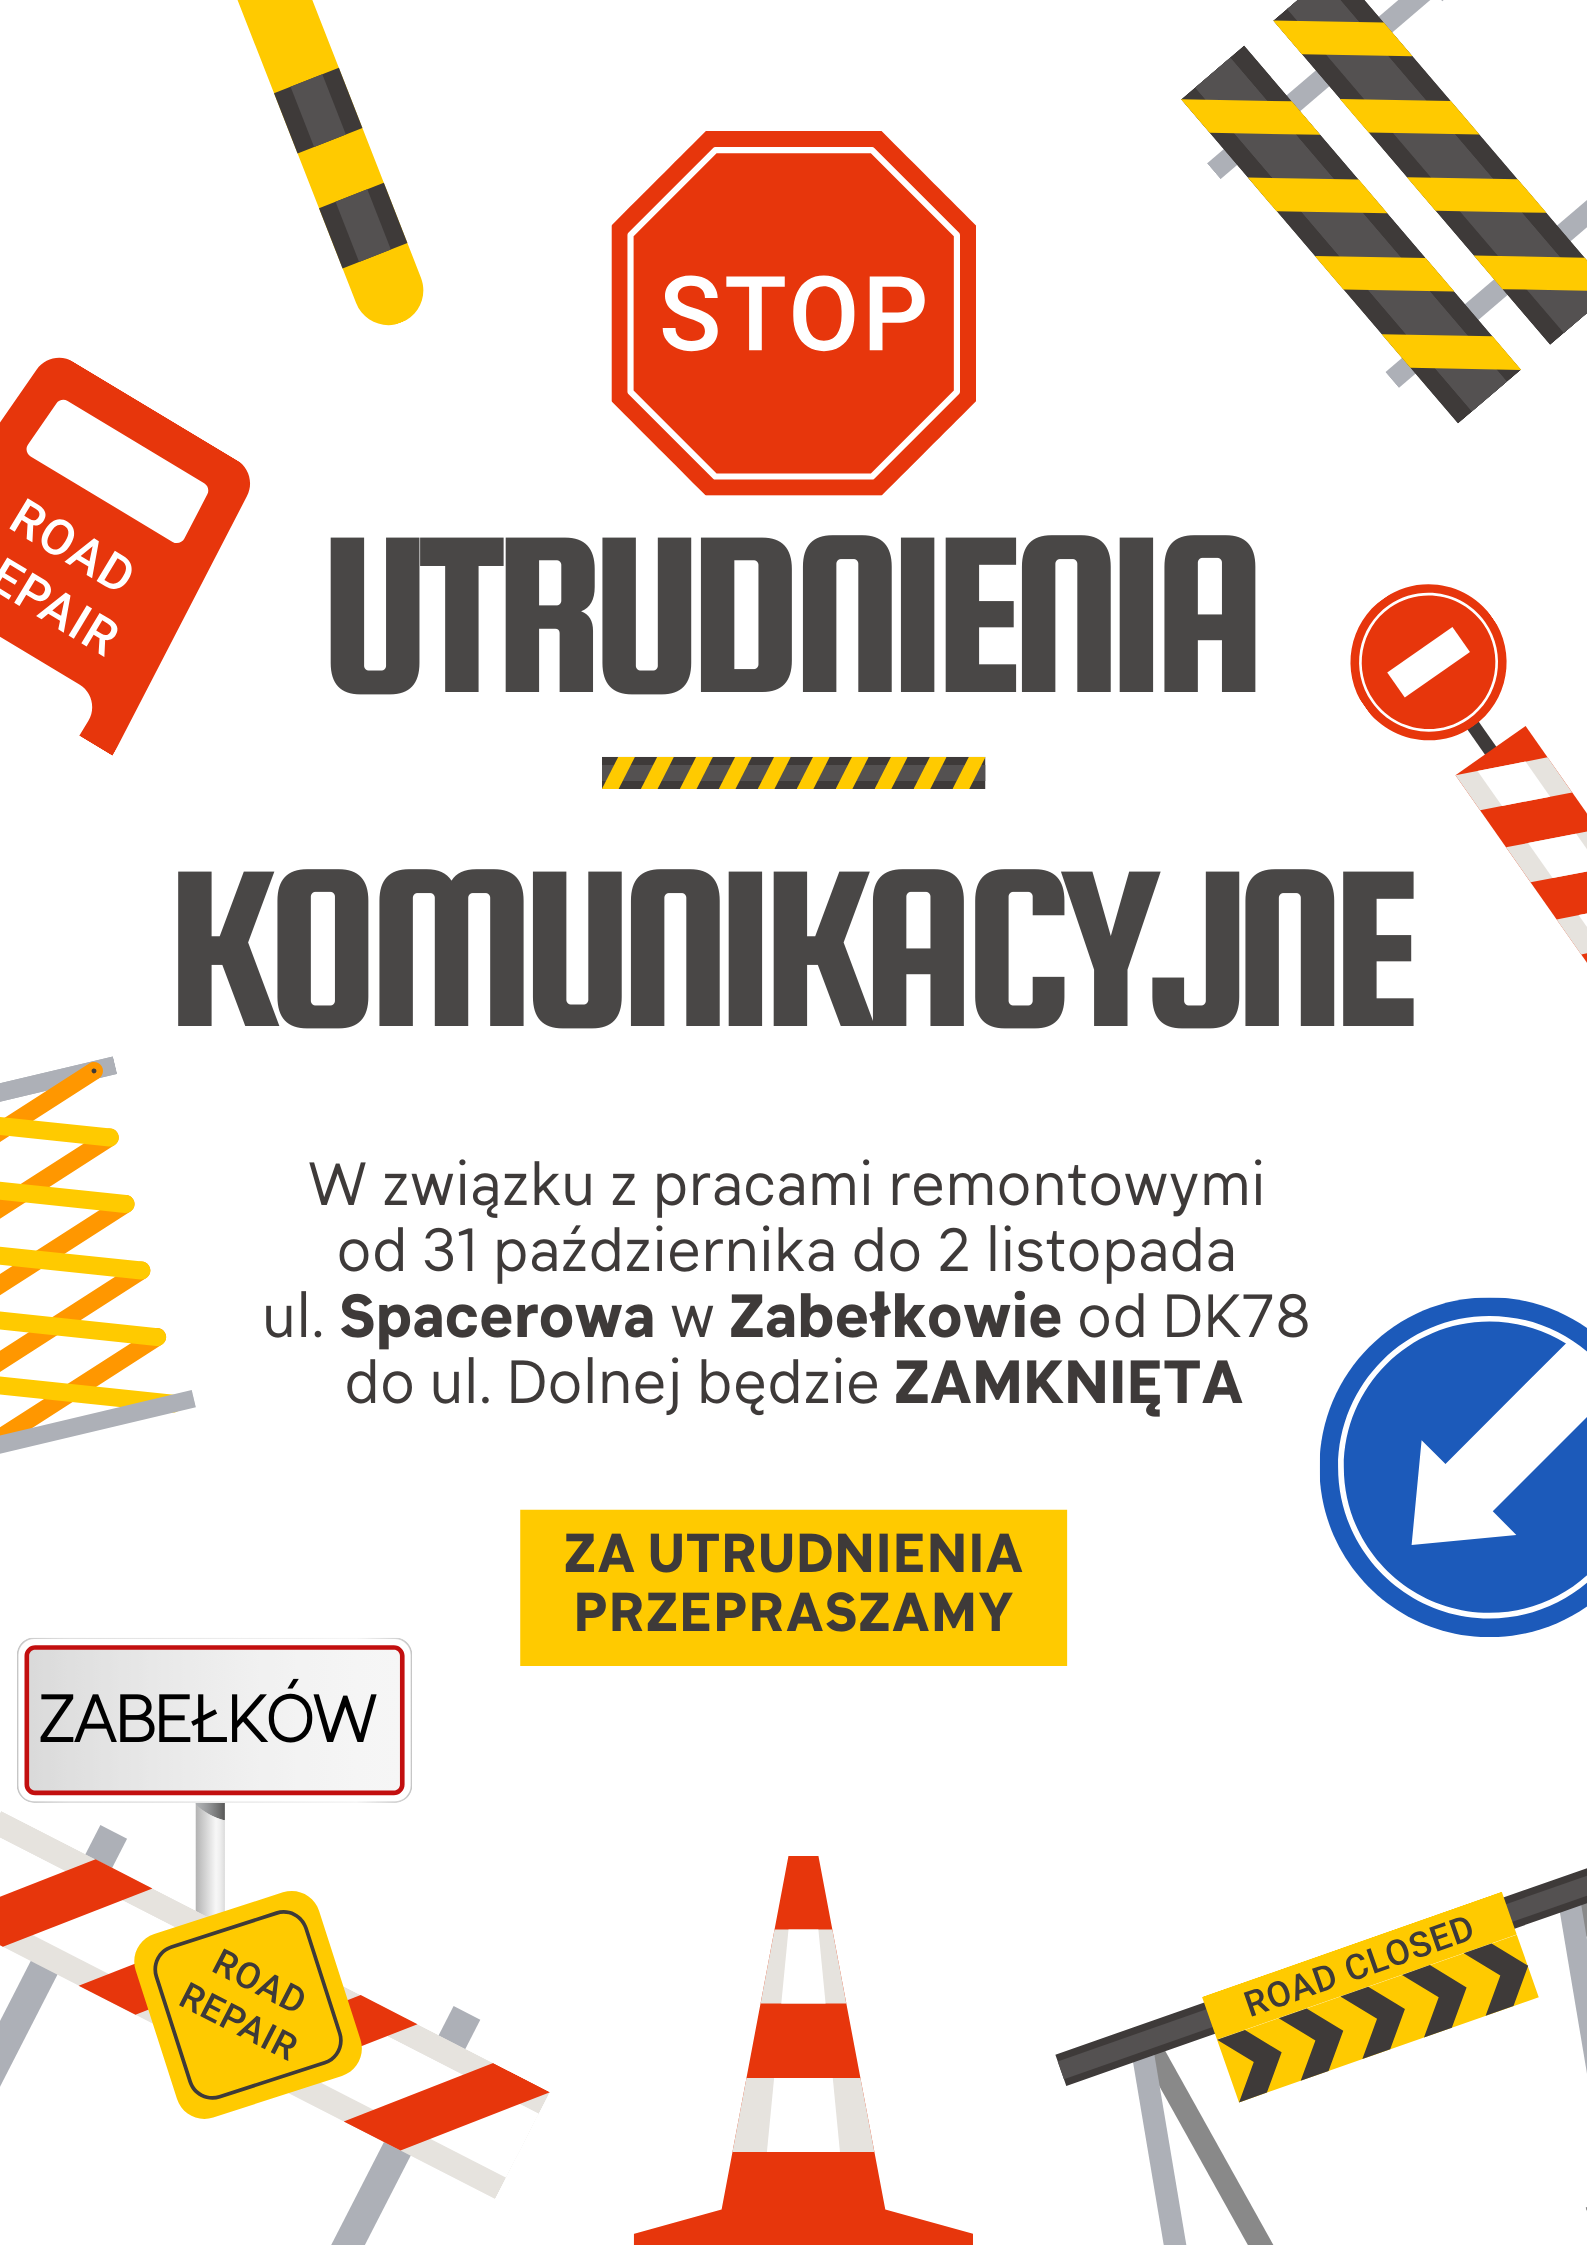 red_yellow_illustrated_road_repair_poster